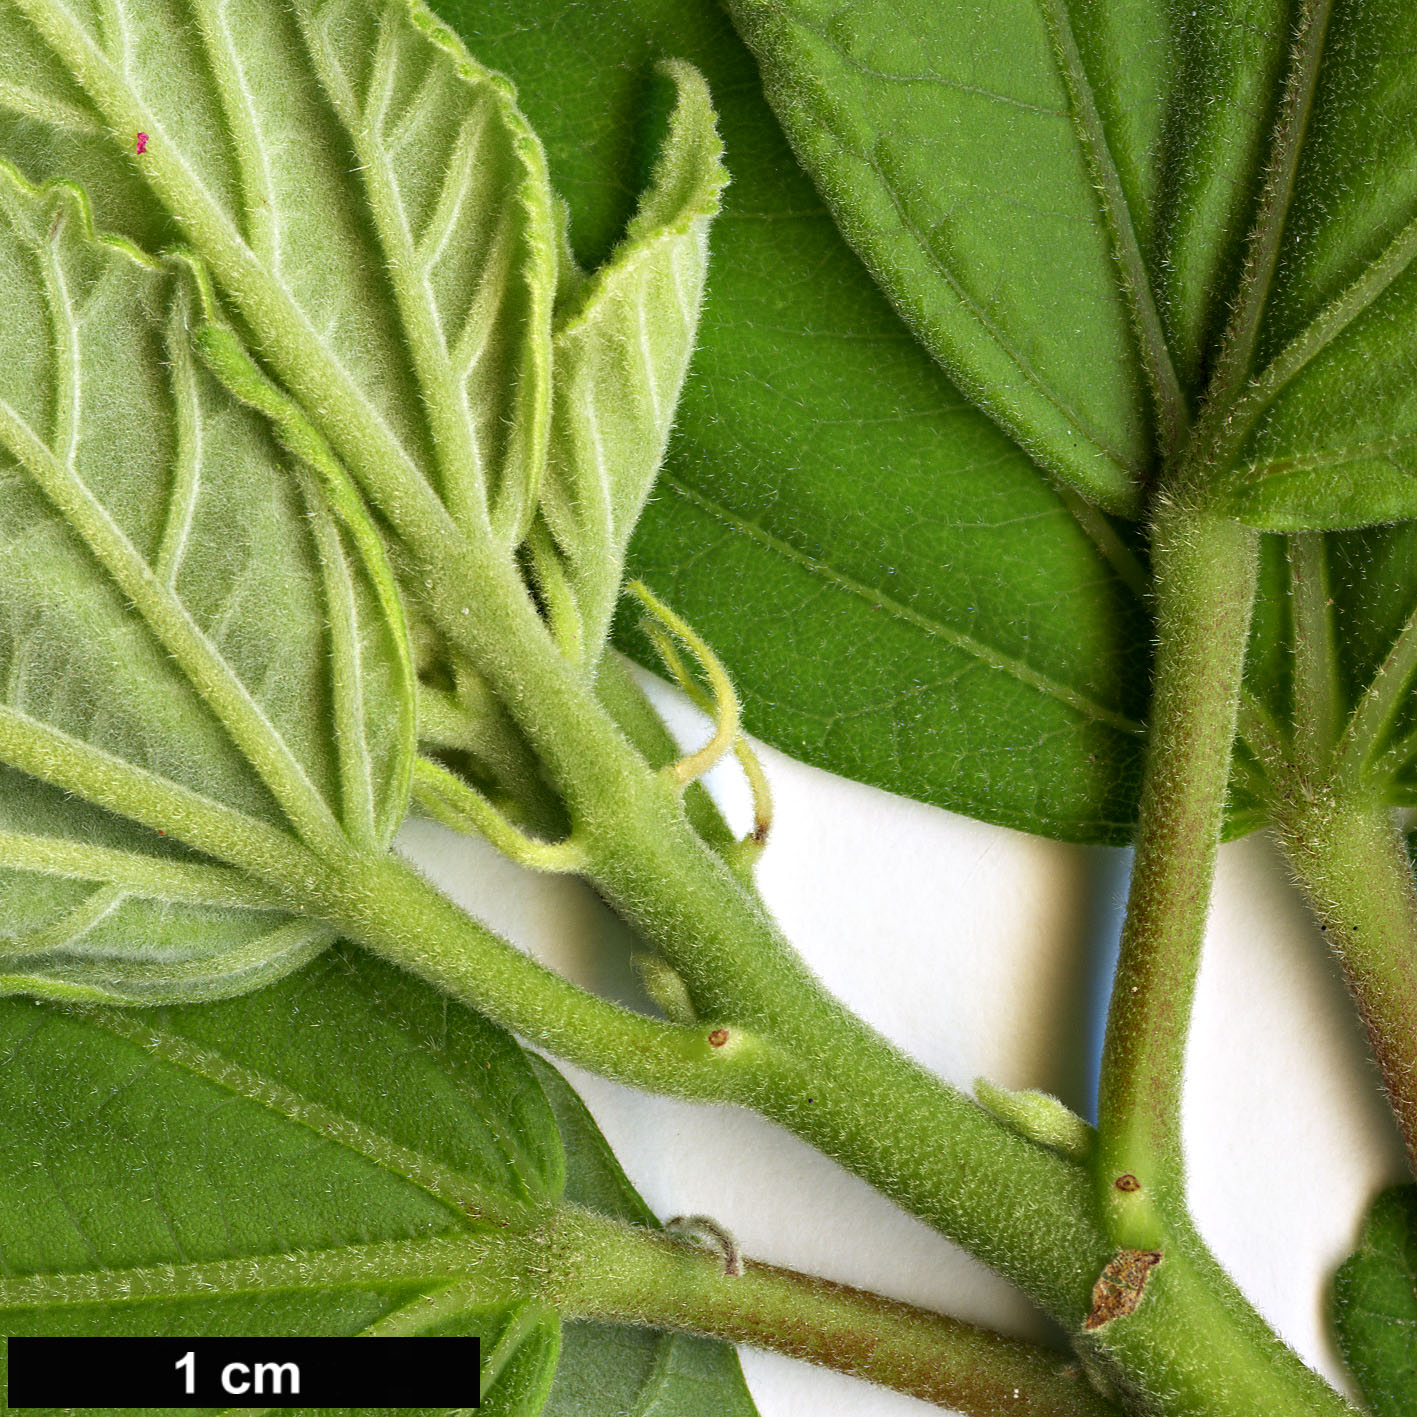 High resolution image: Family: Malvaceae - Genus: Hibiscus - Taxon: moscheutos